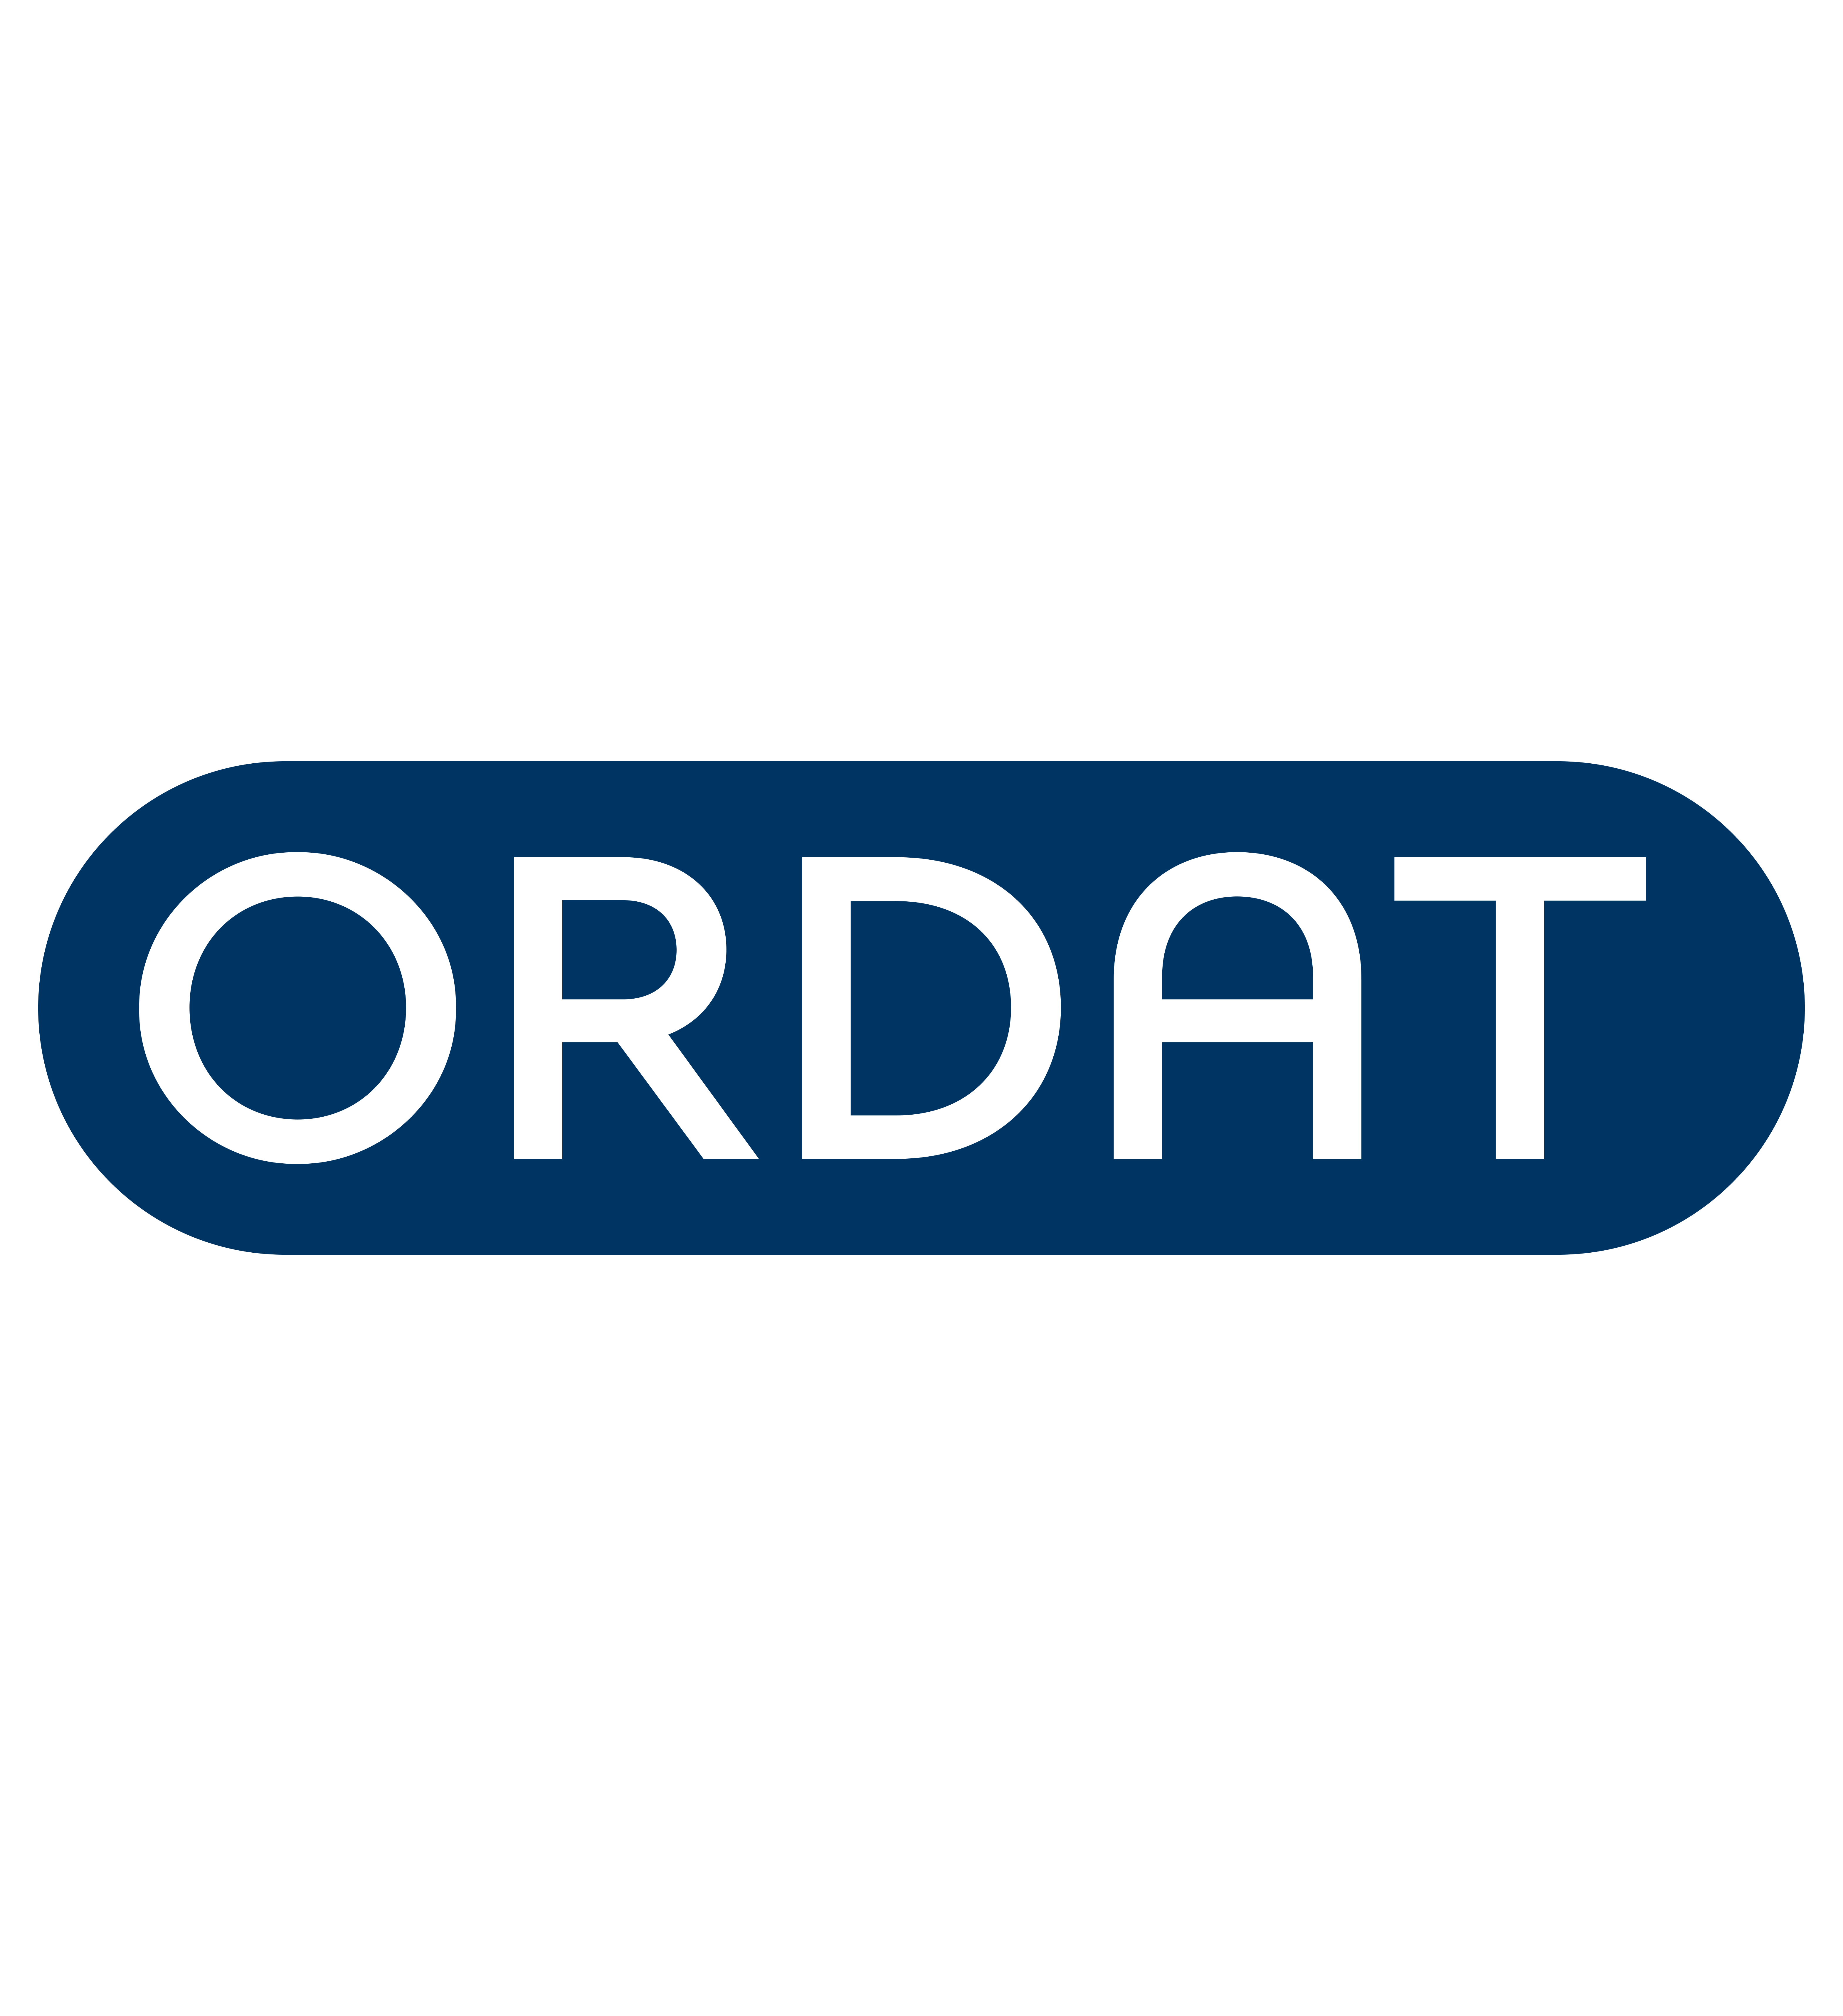 ORDAT Logo